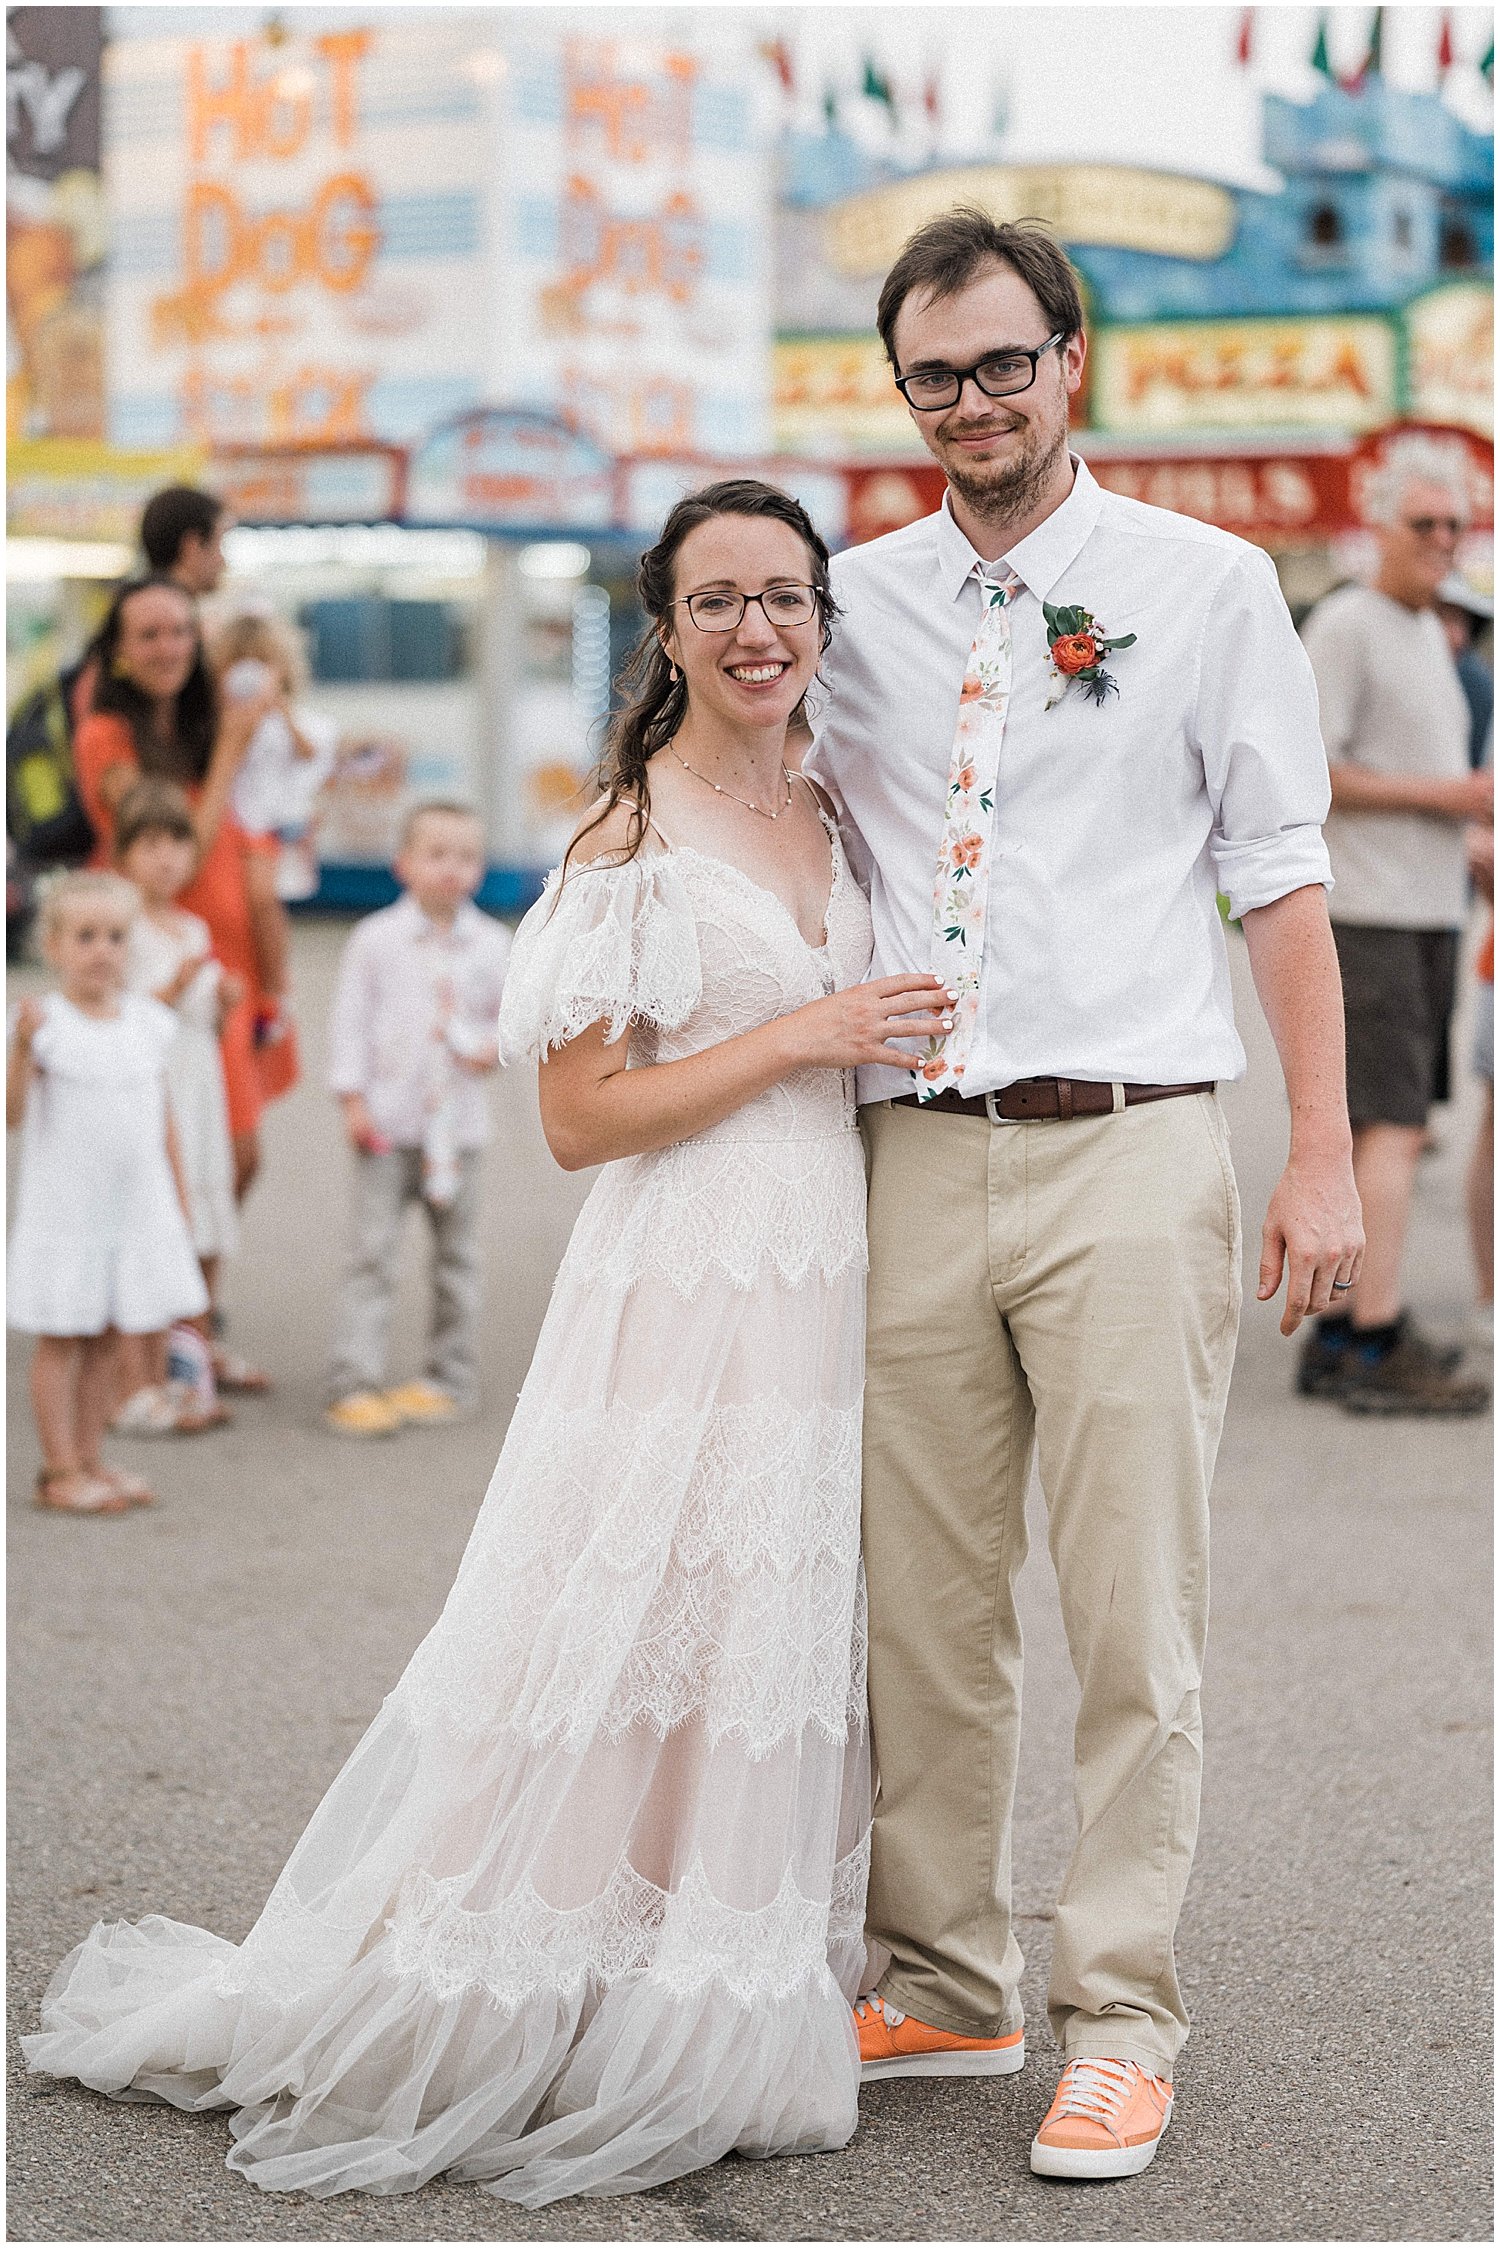 Clark County Fair Wedding Portraits | Springfield, Ohio